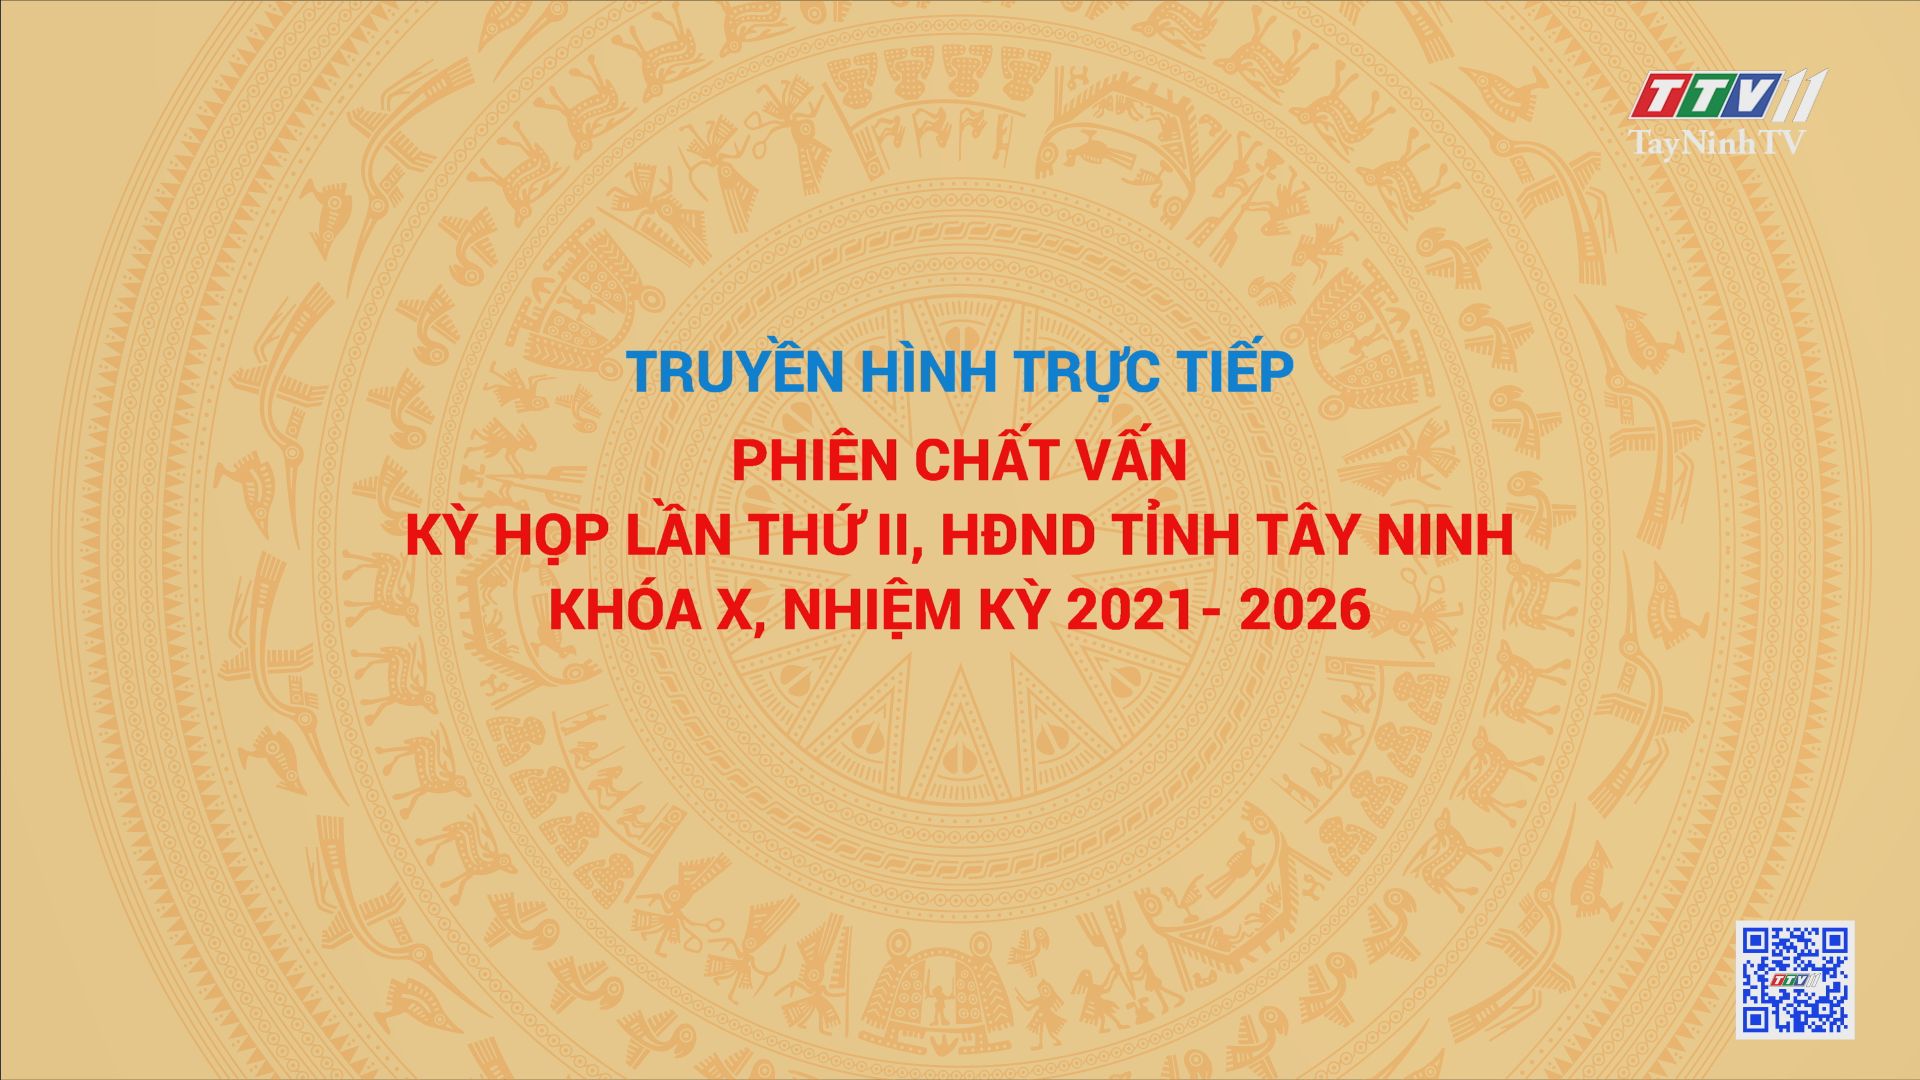 TRỰC TIẾP - PHIÊN CHẤT VẤN KỲ HỌP LẦN THỨ II, HĐND TỈNH TÂY NINH KHÓA X, NHIỆM KỲ 2021-2026 | TayNinhTV